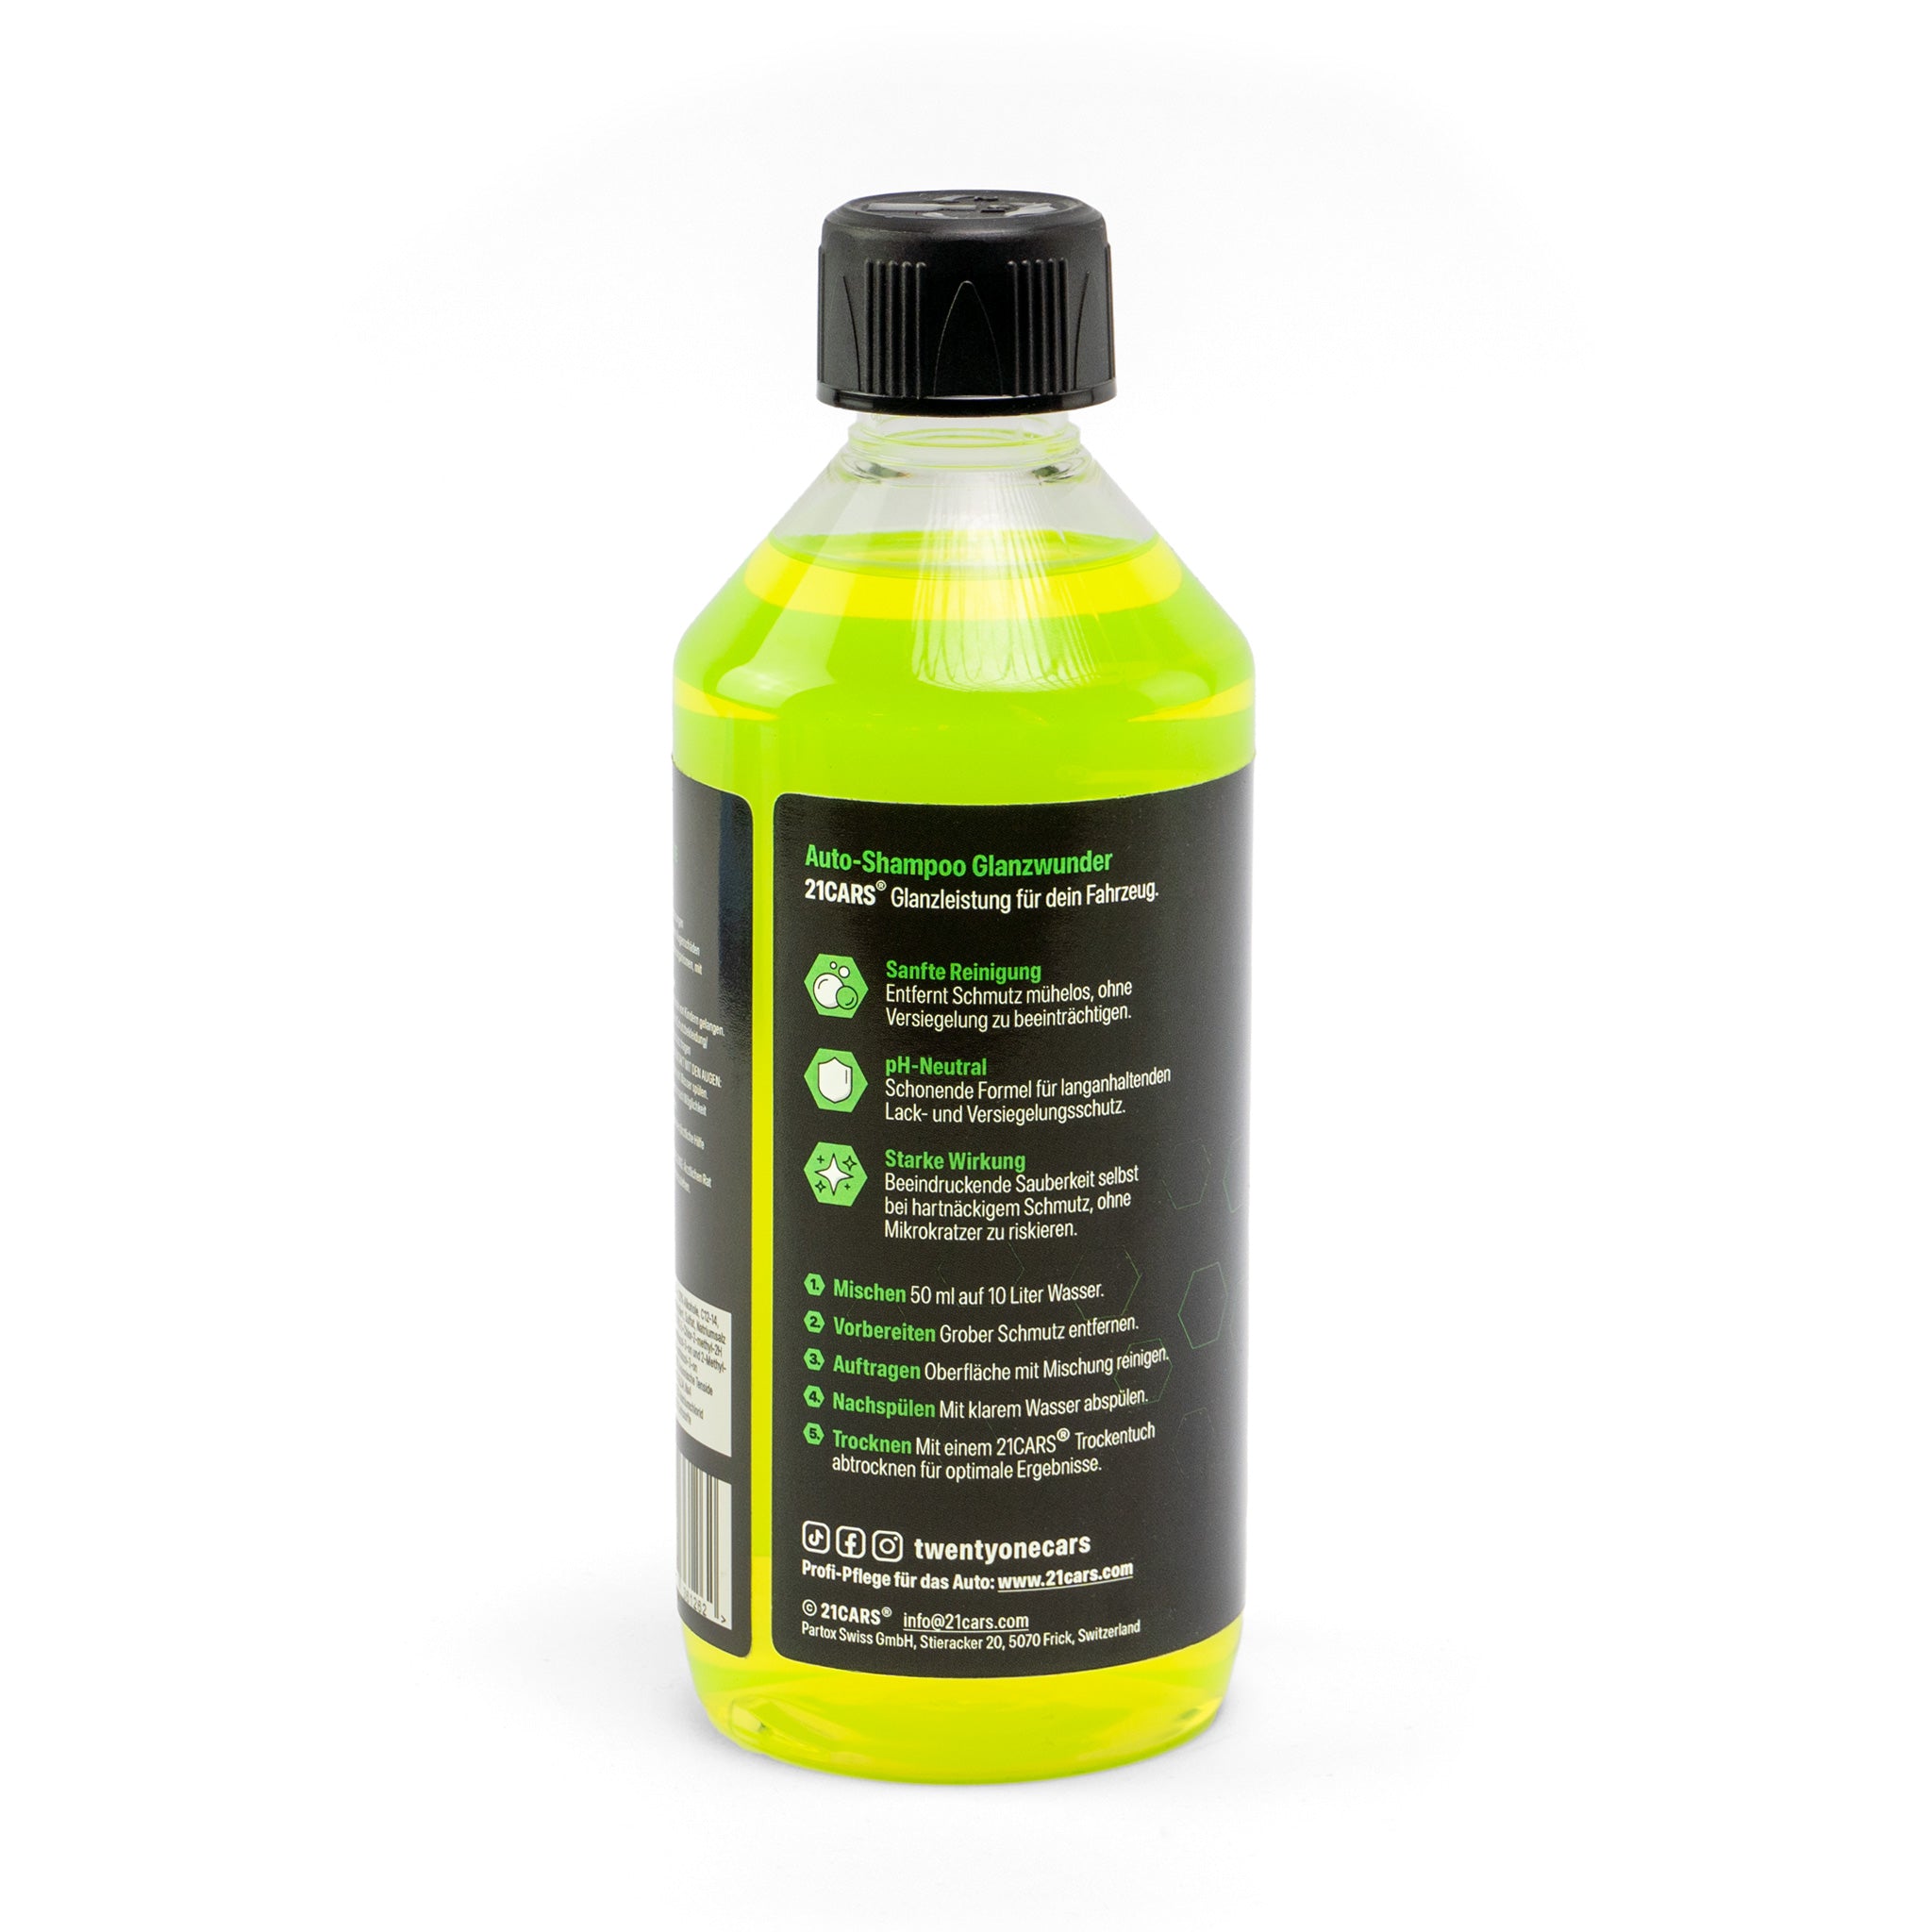 21CARS® shampooing pour voiture transparent brillant 0,5 litre | citron vert